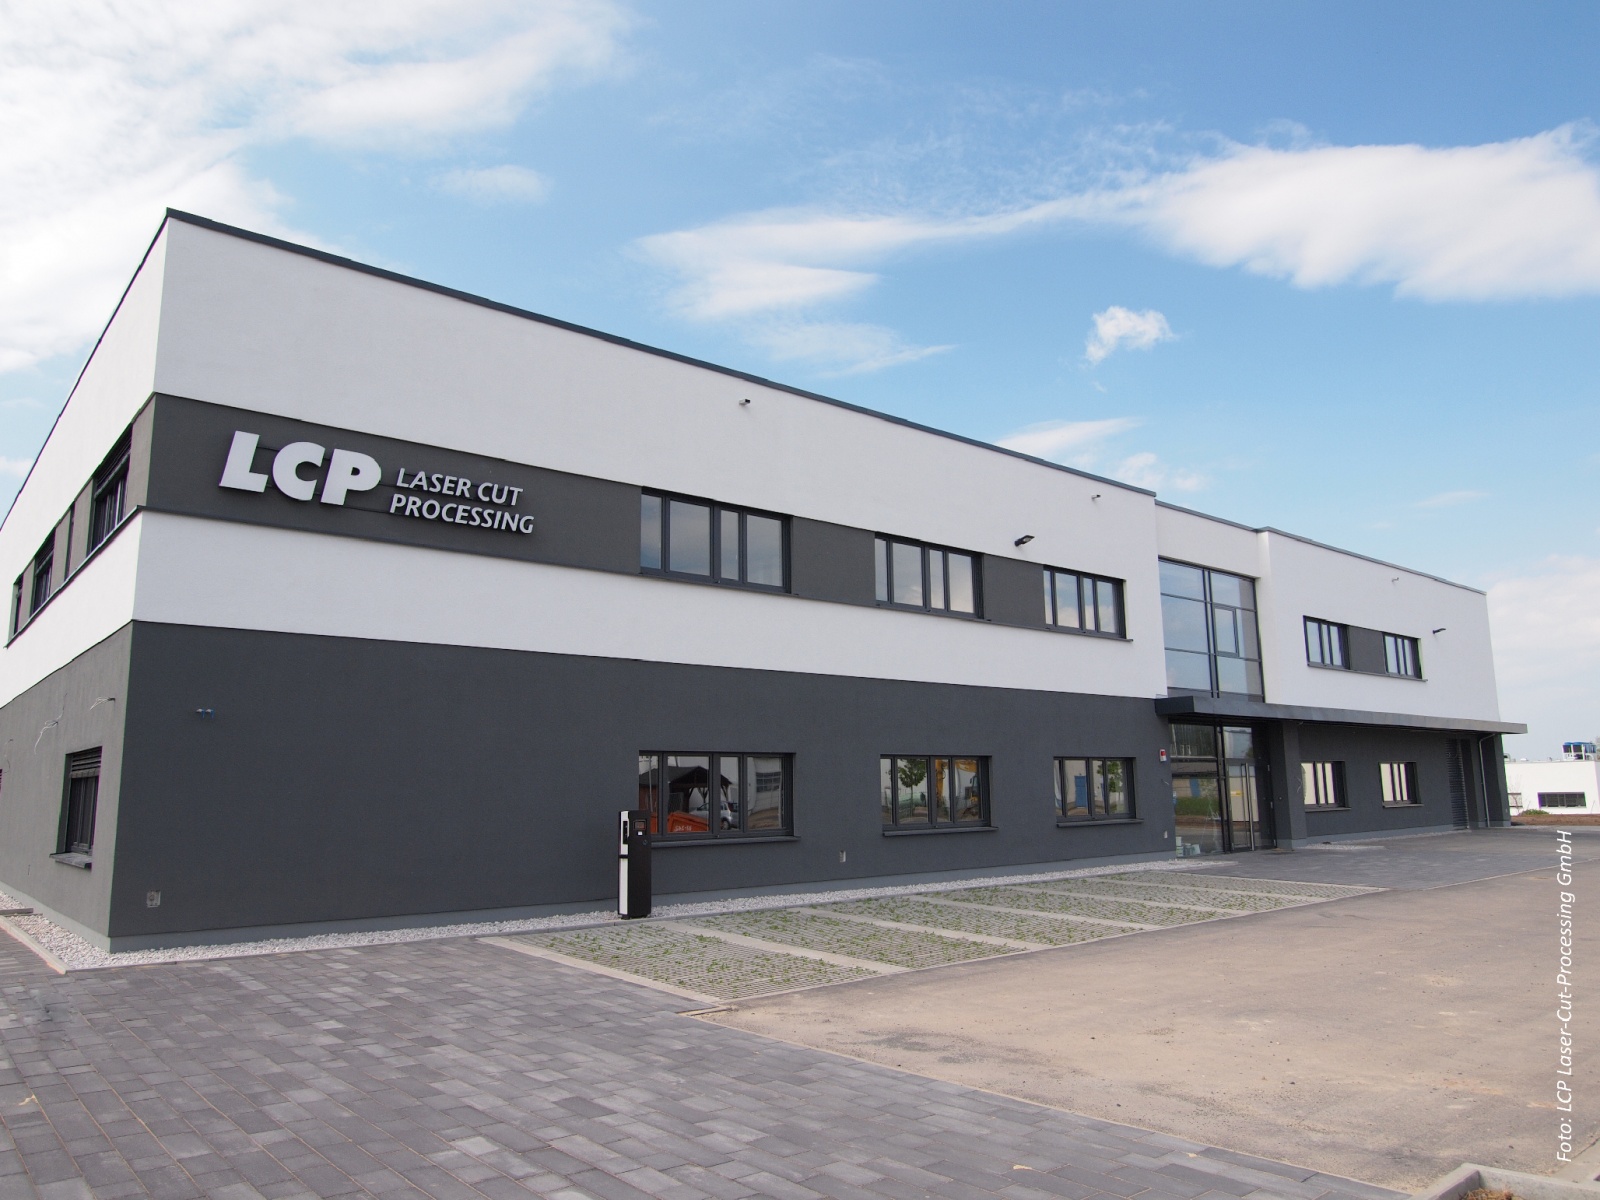 Produktionsstätte LCP, Neubau Produktionsstätte Werk IV der LCP GmbH aus Hermsdorf, Figure: Linda Riedel